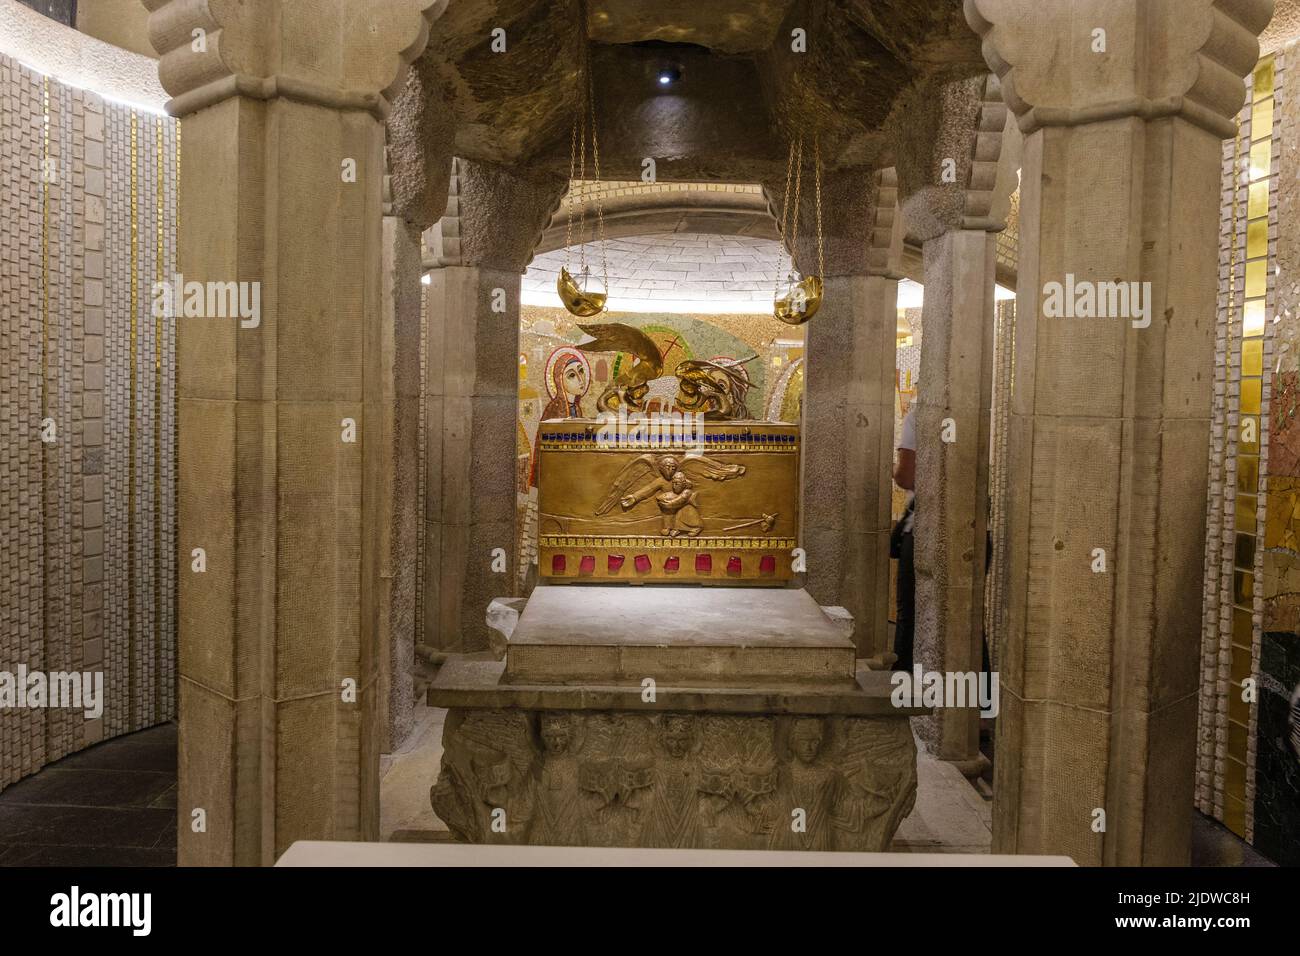 Spanien, Santo Domingo de la Calzada, La Rja. Reliquiar in der Kathedrale von Santo Domingo de la Calzada mit den Knochen des Heiligen Dominikus. Stockfoto